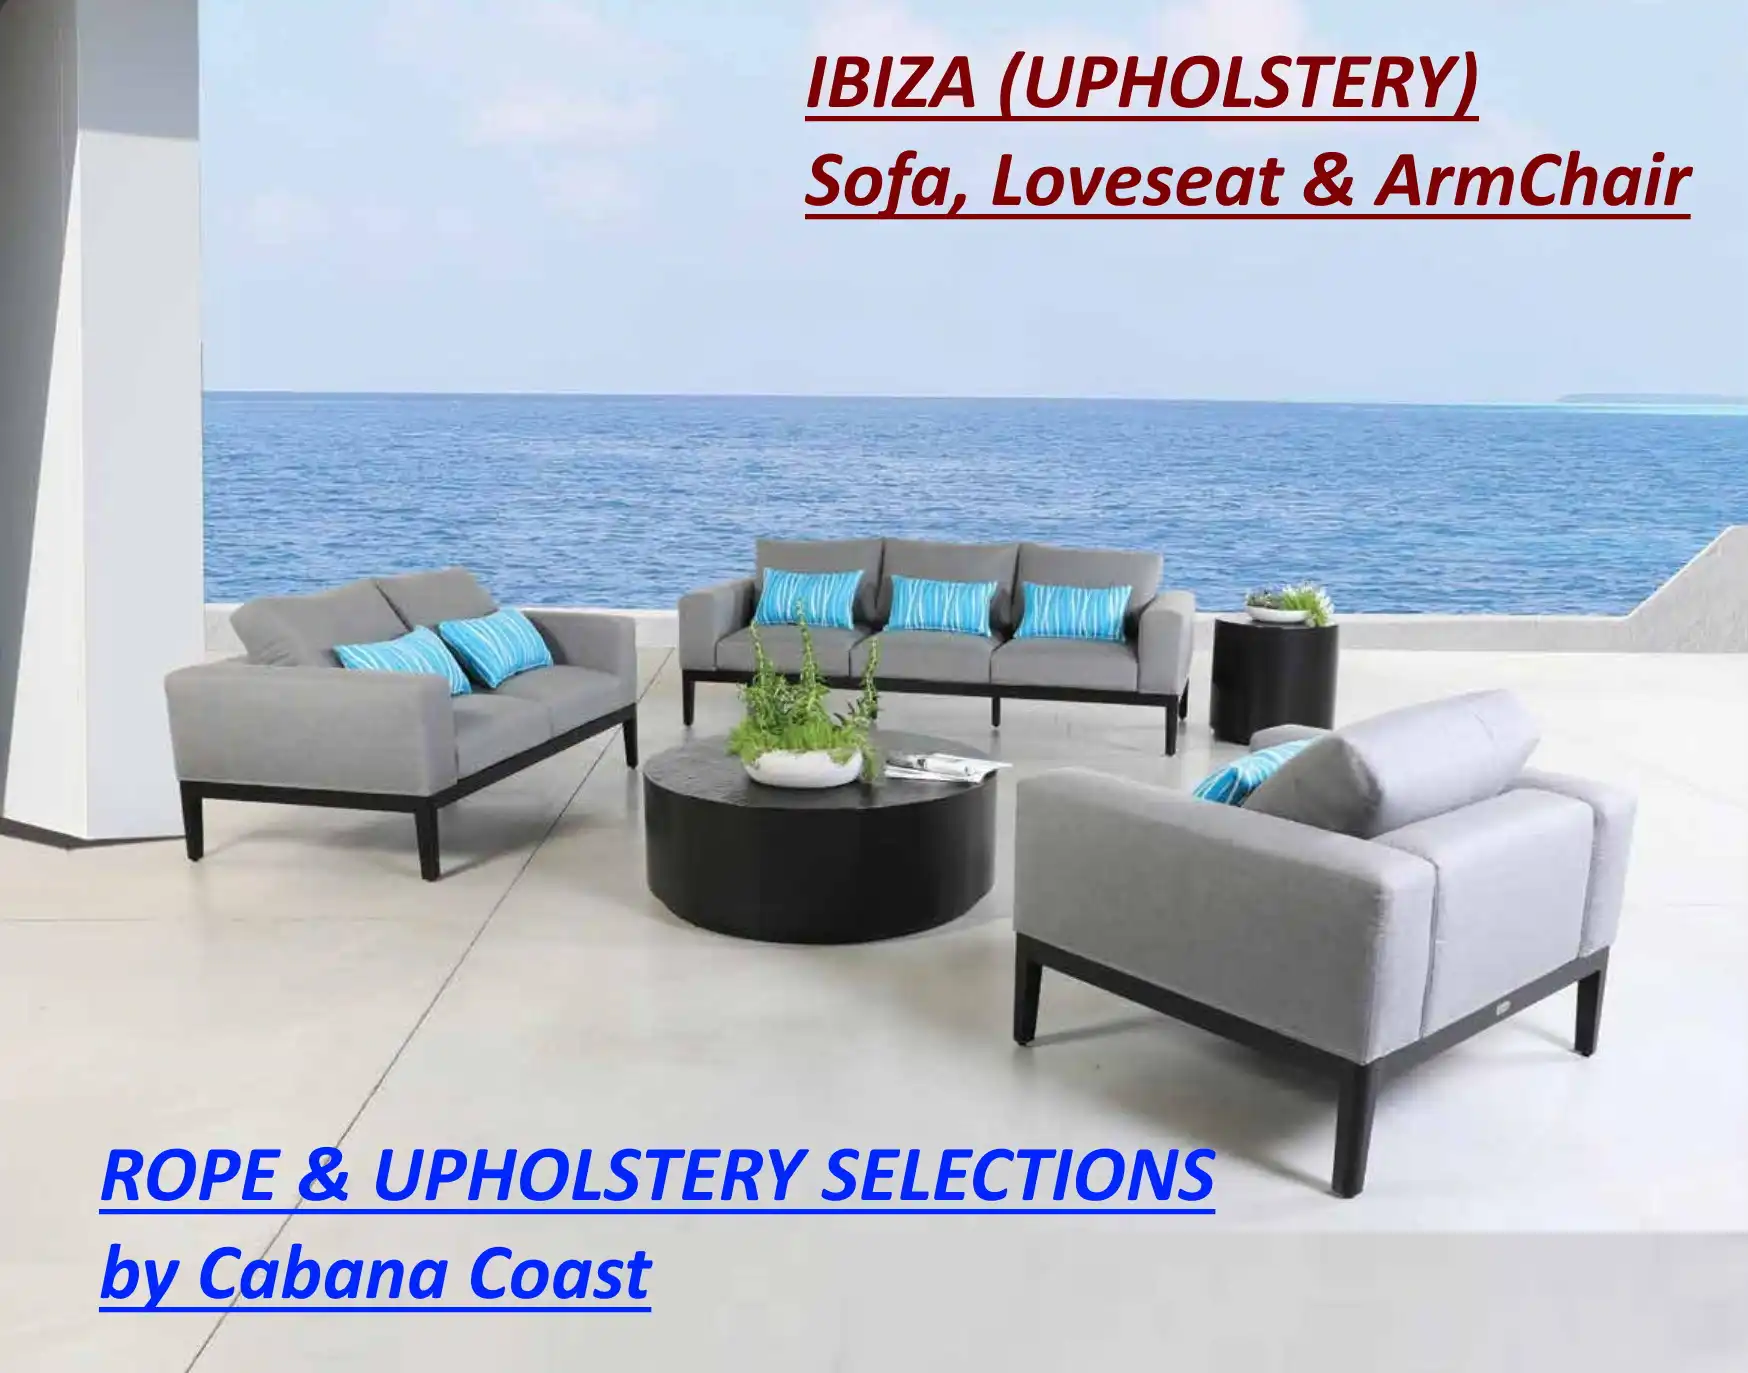 IBIZA (UPHOLSTERY) Sofa, Loveseat & Armchair by Cabana Coast